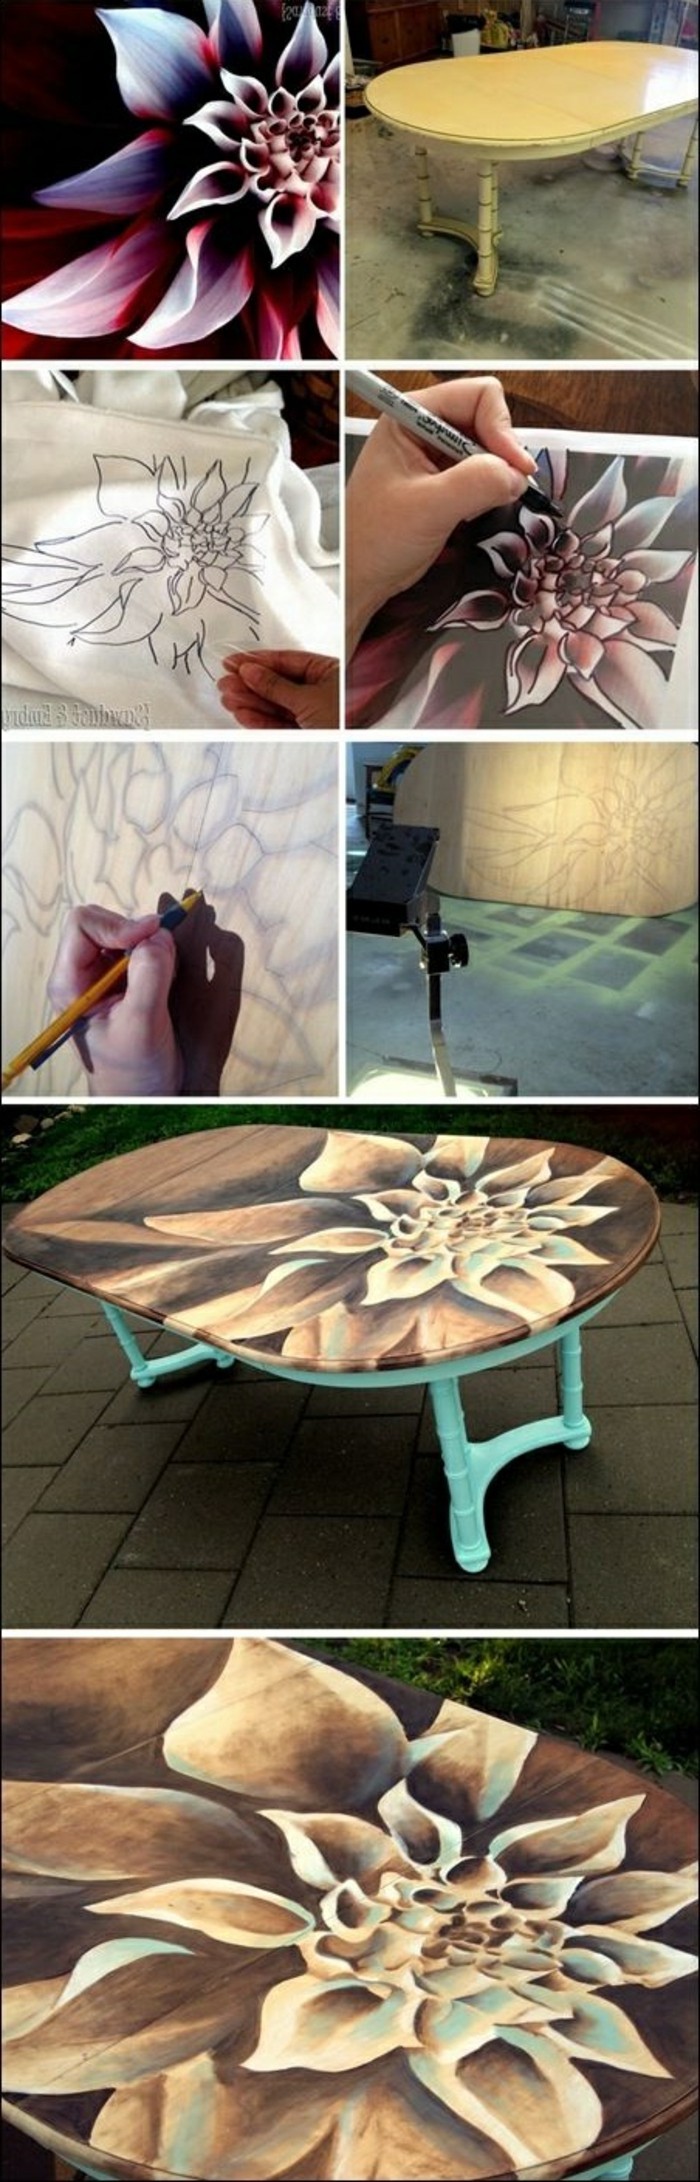 DIY-moebel-kreativno-wohnideen stol-uređenje s Cvijeće